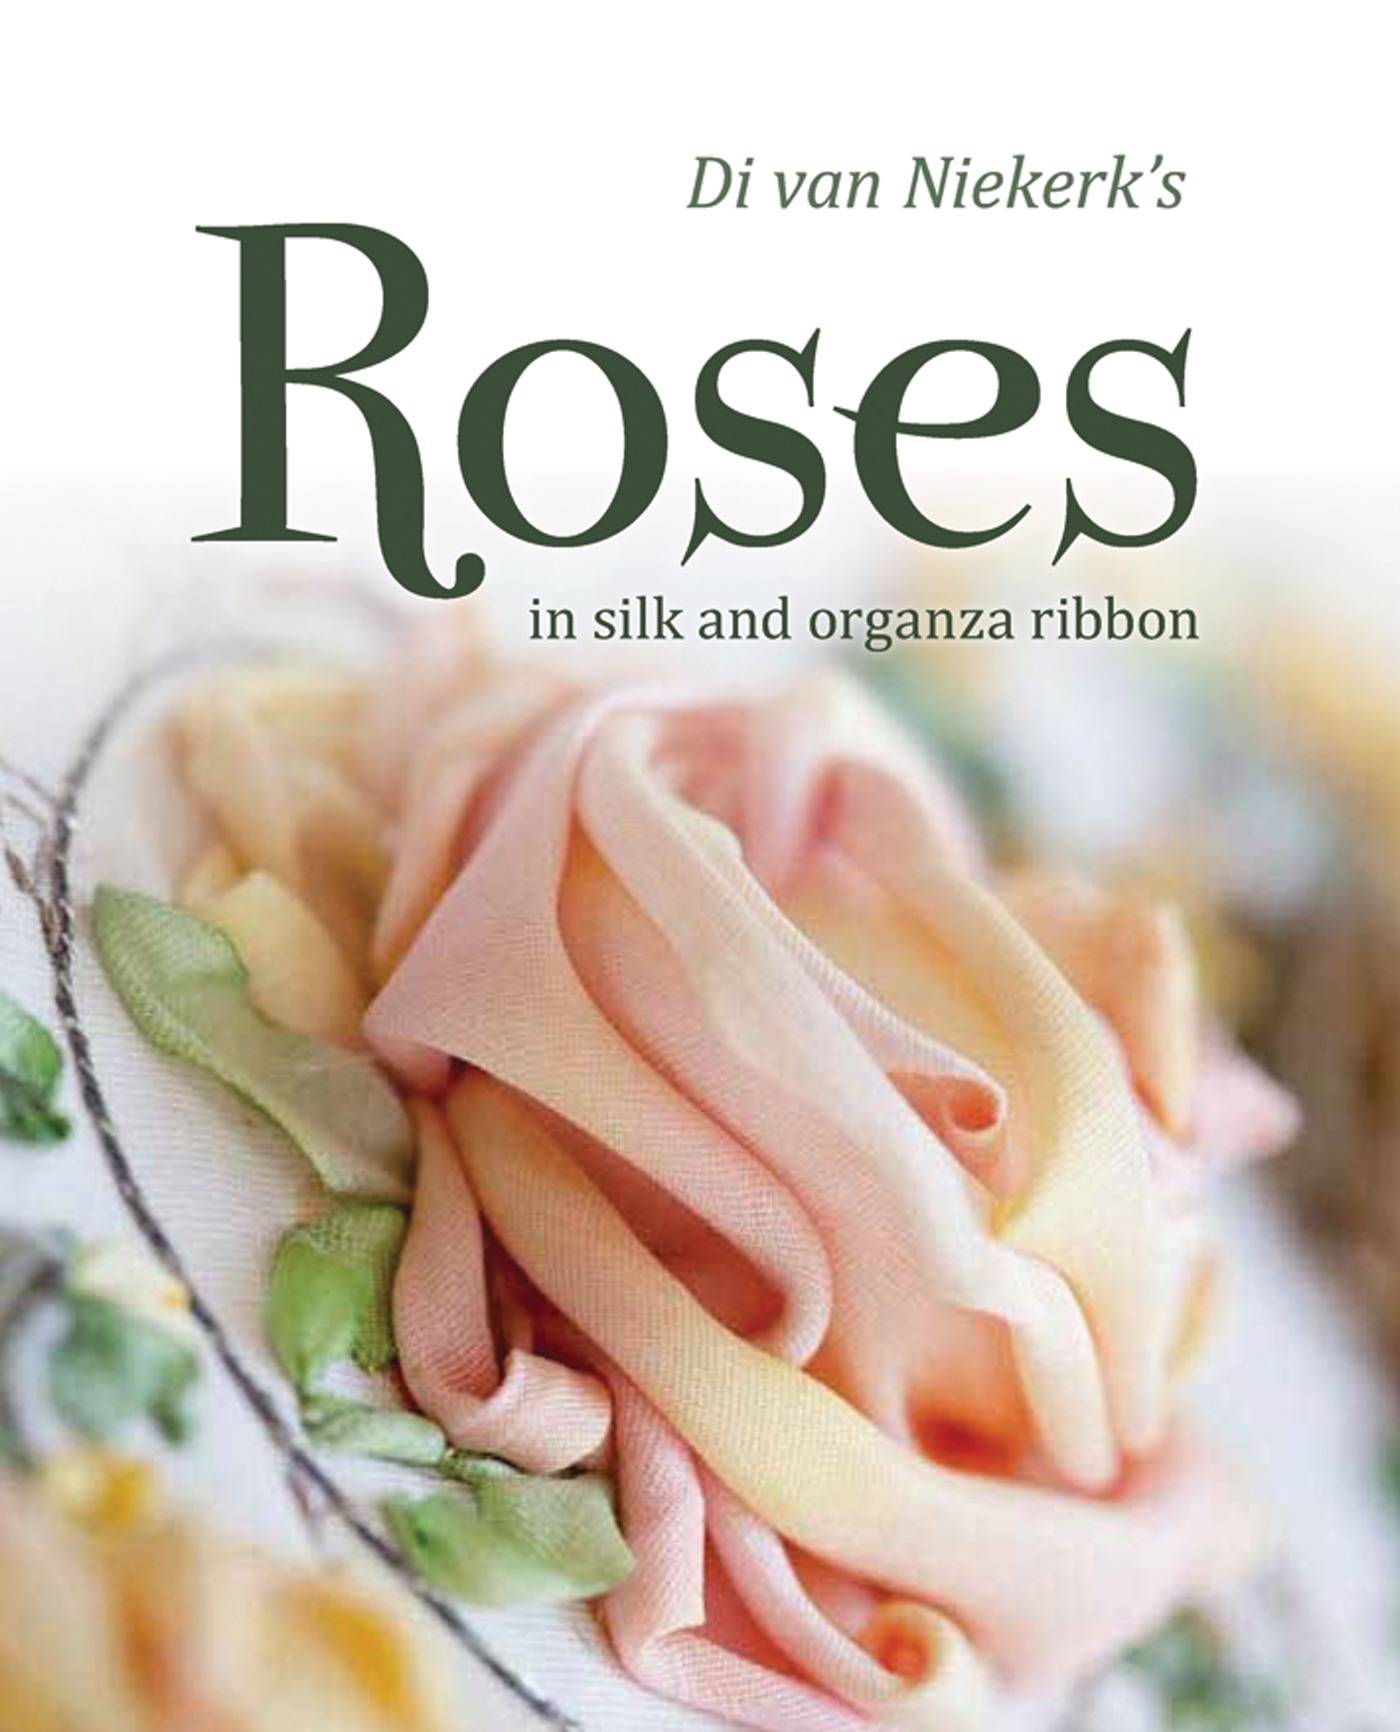 Di van niekerks roses - in silk and organza ribbon